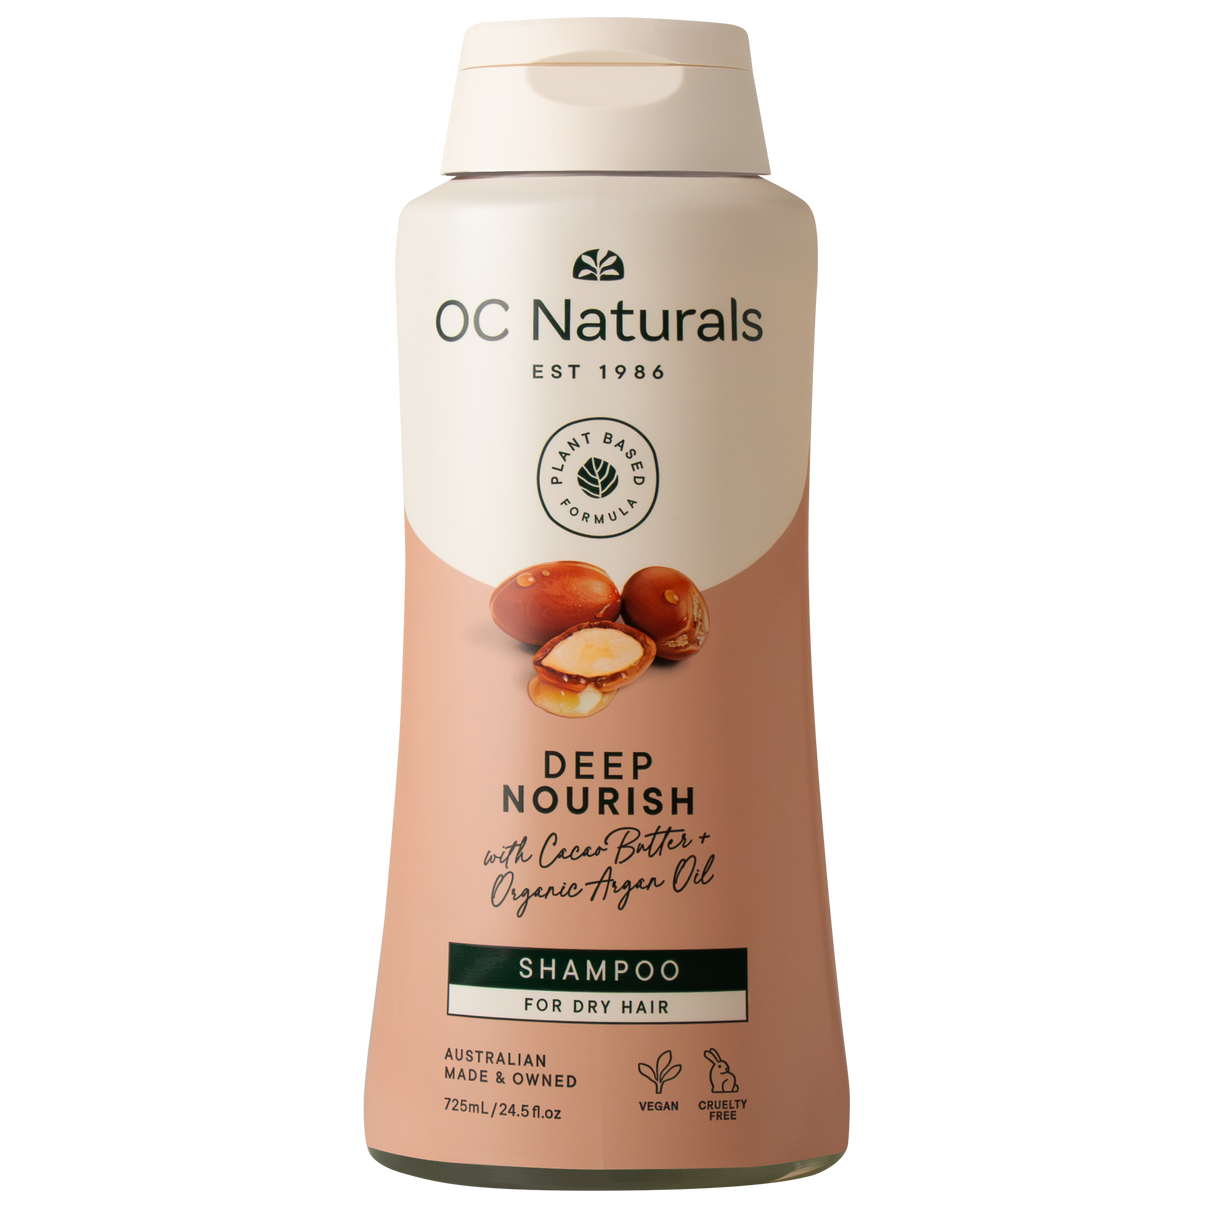 OC Naturals Deep Nourish Shampoo 725ml